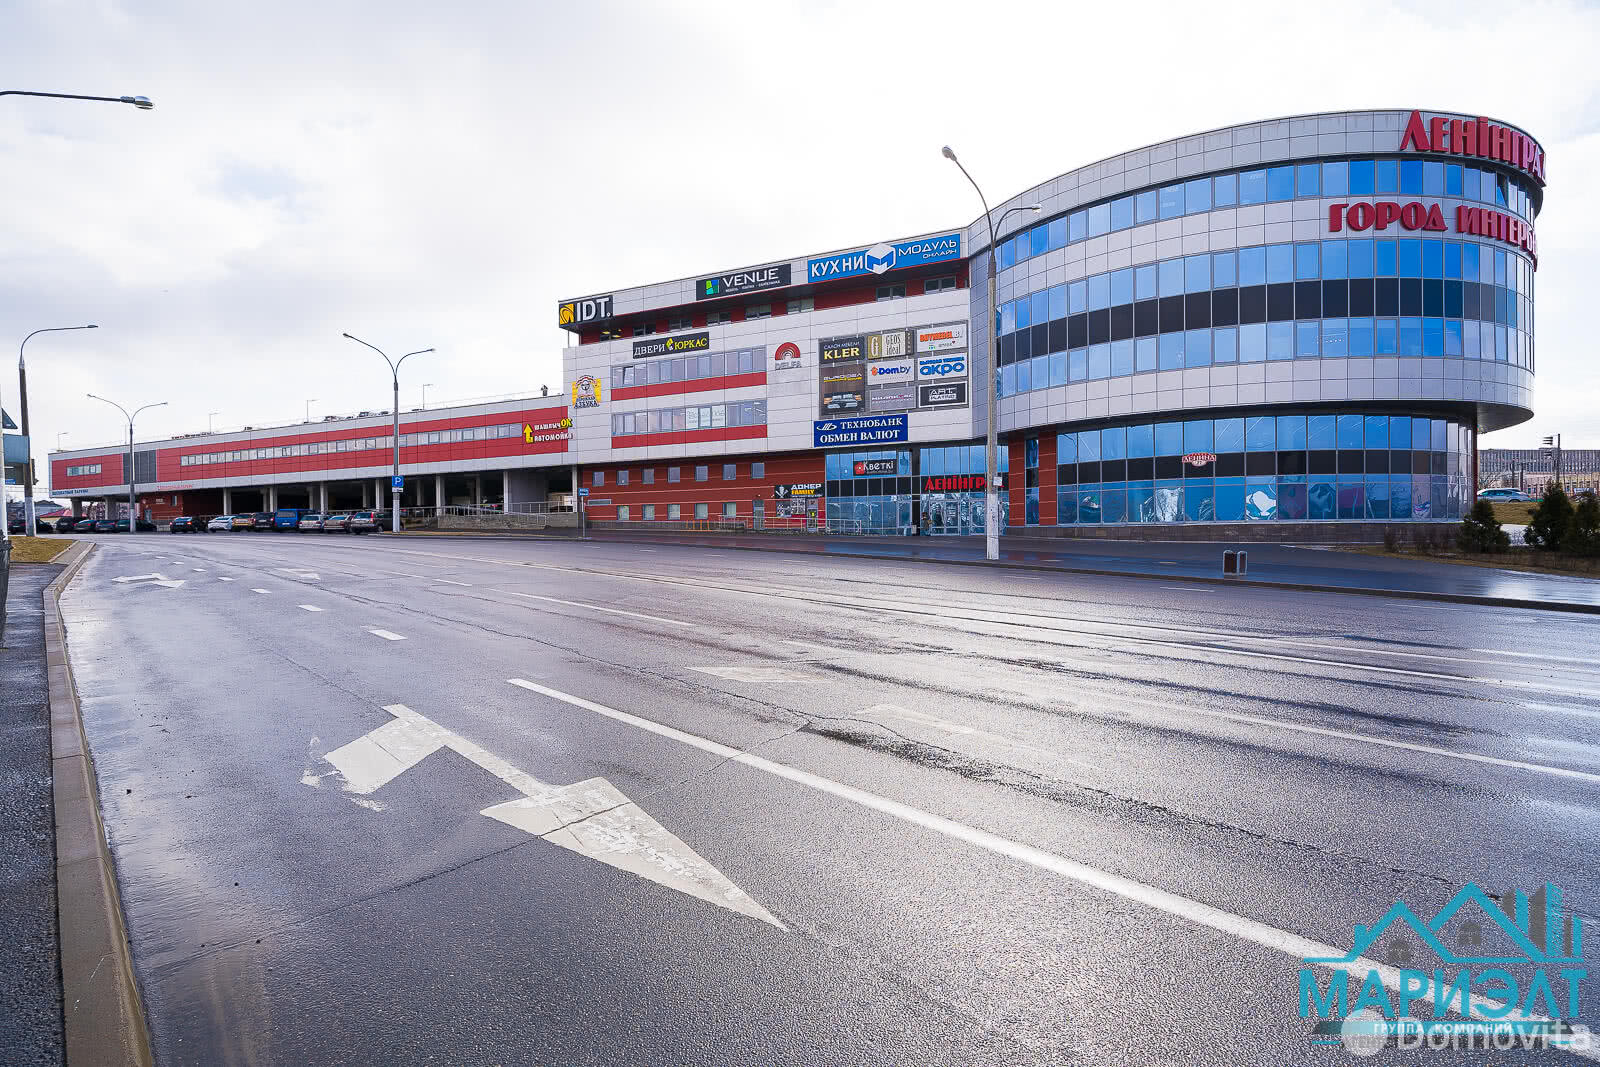 Аренда торговой точки на ул. Ленина, д. 27 в Минске, 251EUR - фото 1